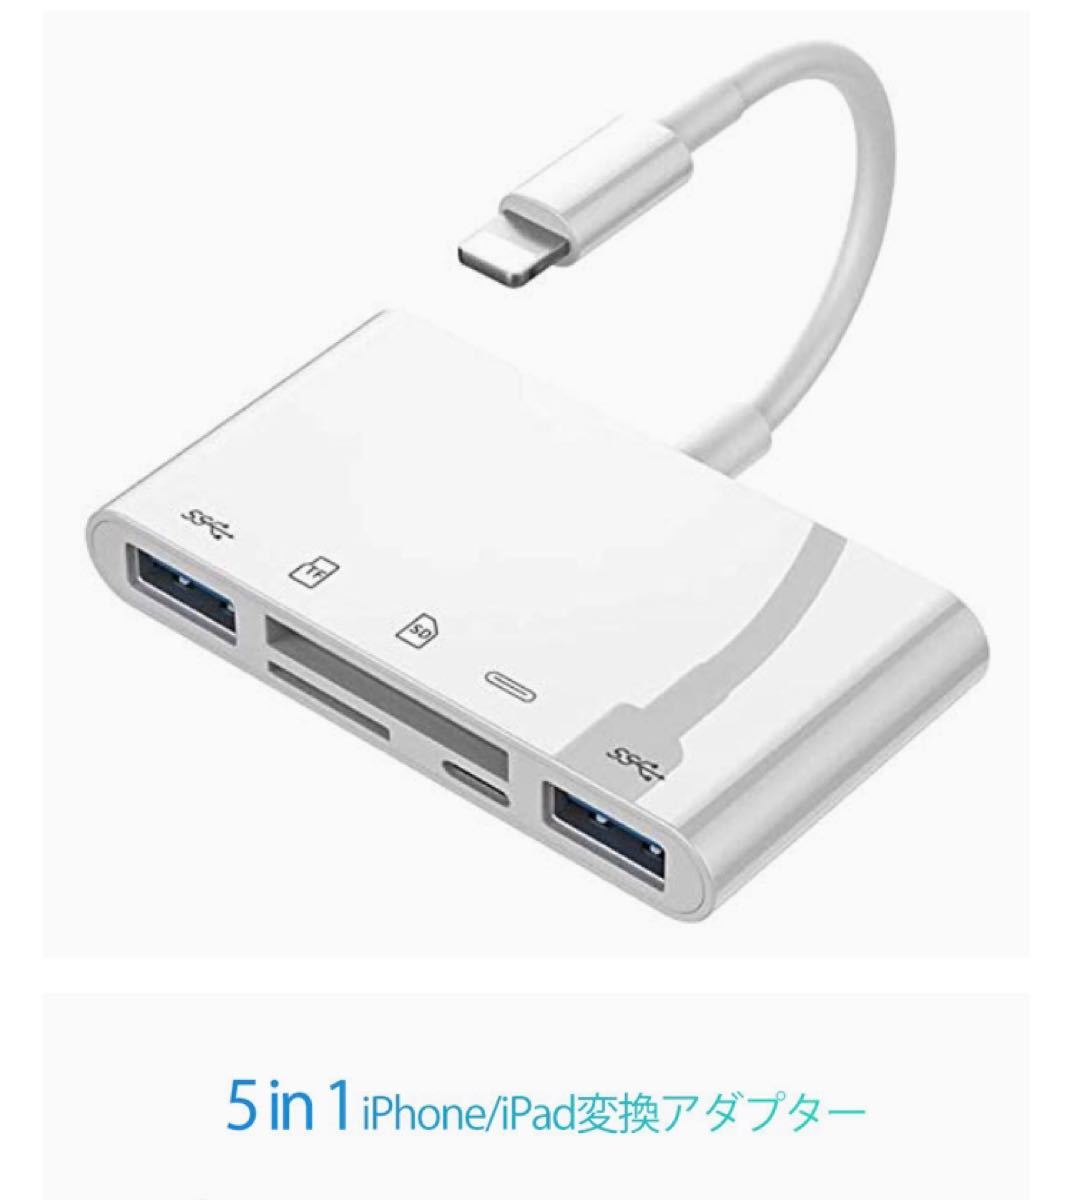 lPhone/lPad用 SD カードリーダー OTG for lPhone用 USB カメラアダプタ 5in1 USB3.0対応